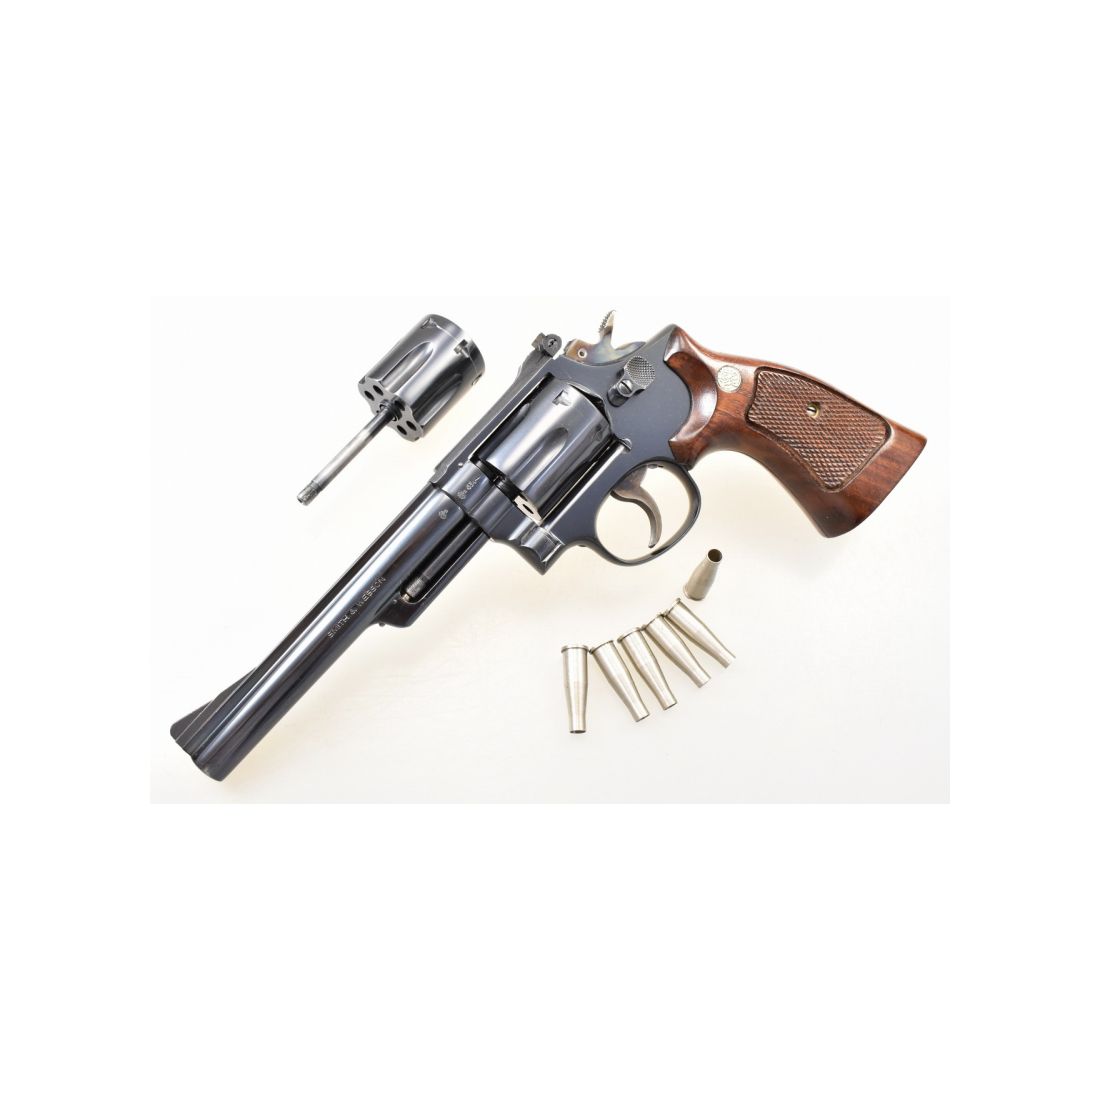 SMITH & WESSON Revolver Mod. 53 Bj. 1961 mit 6" Lauf Kaliber .22 Rem. Jet mit Wechseltrommel .22 LR